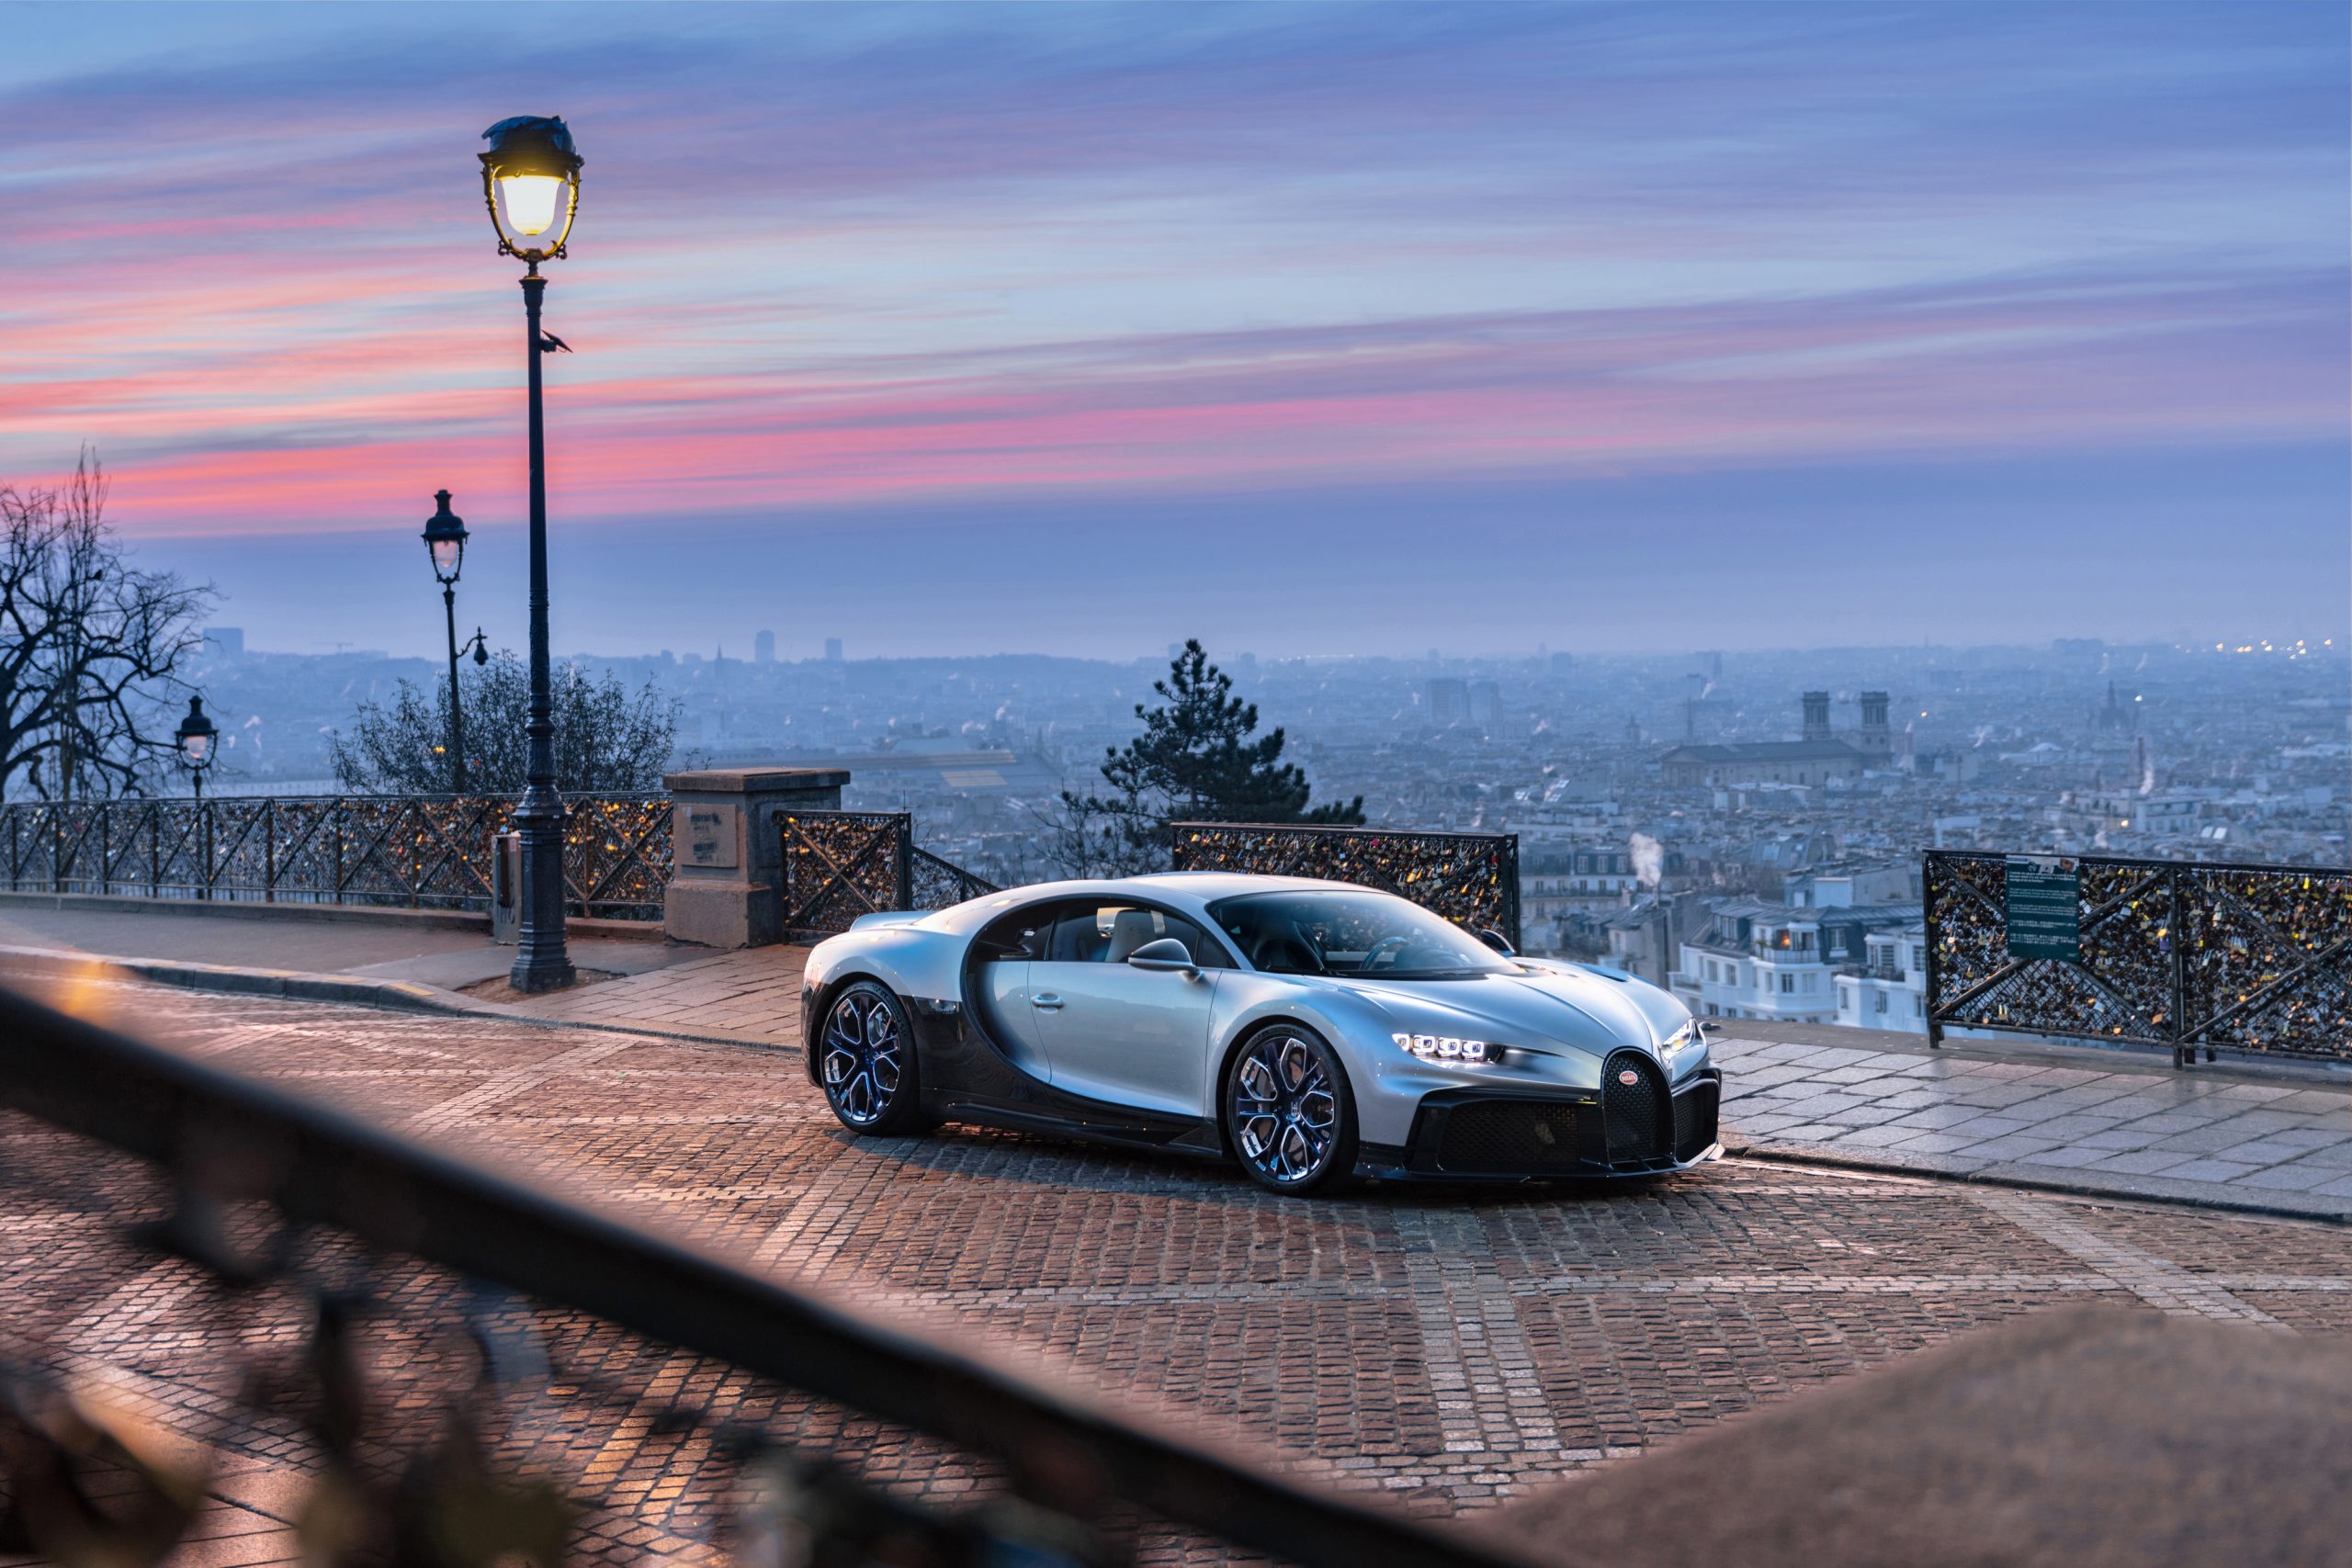 Bugatti Chiron Profilée sells for record-breaking £8.7m in Paris